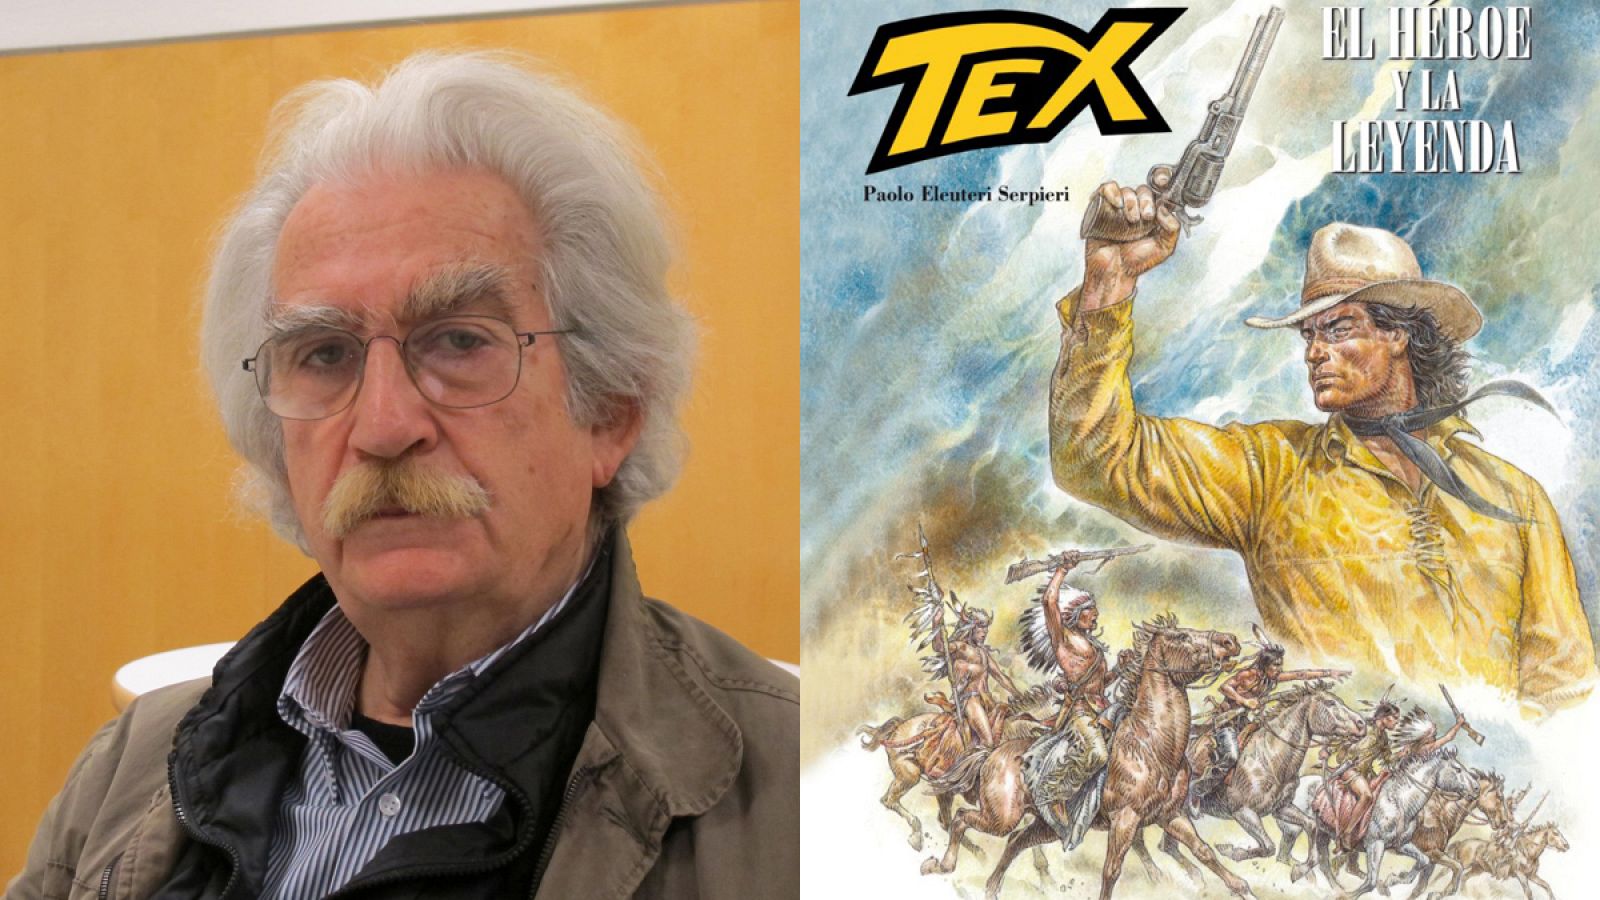 Paolo Eleuteri Serpieri y la portada de 'Tex: El héroe y la leyenda'